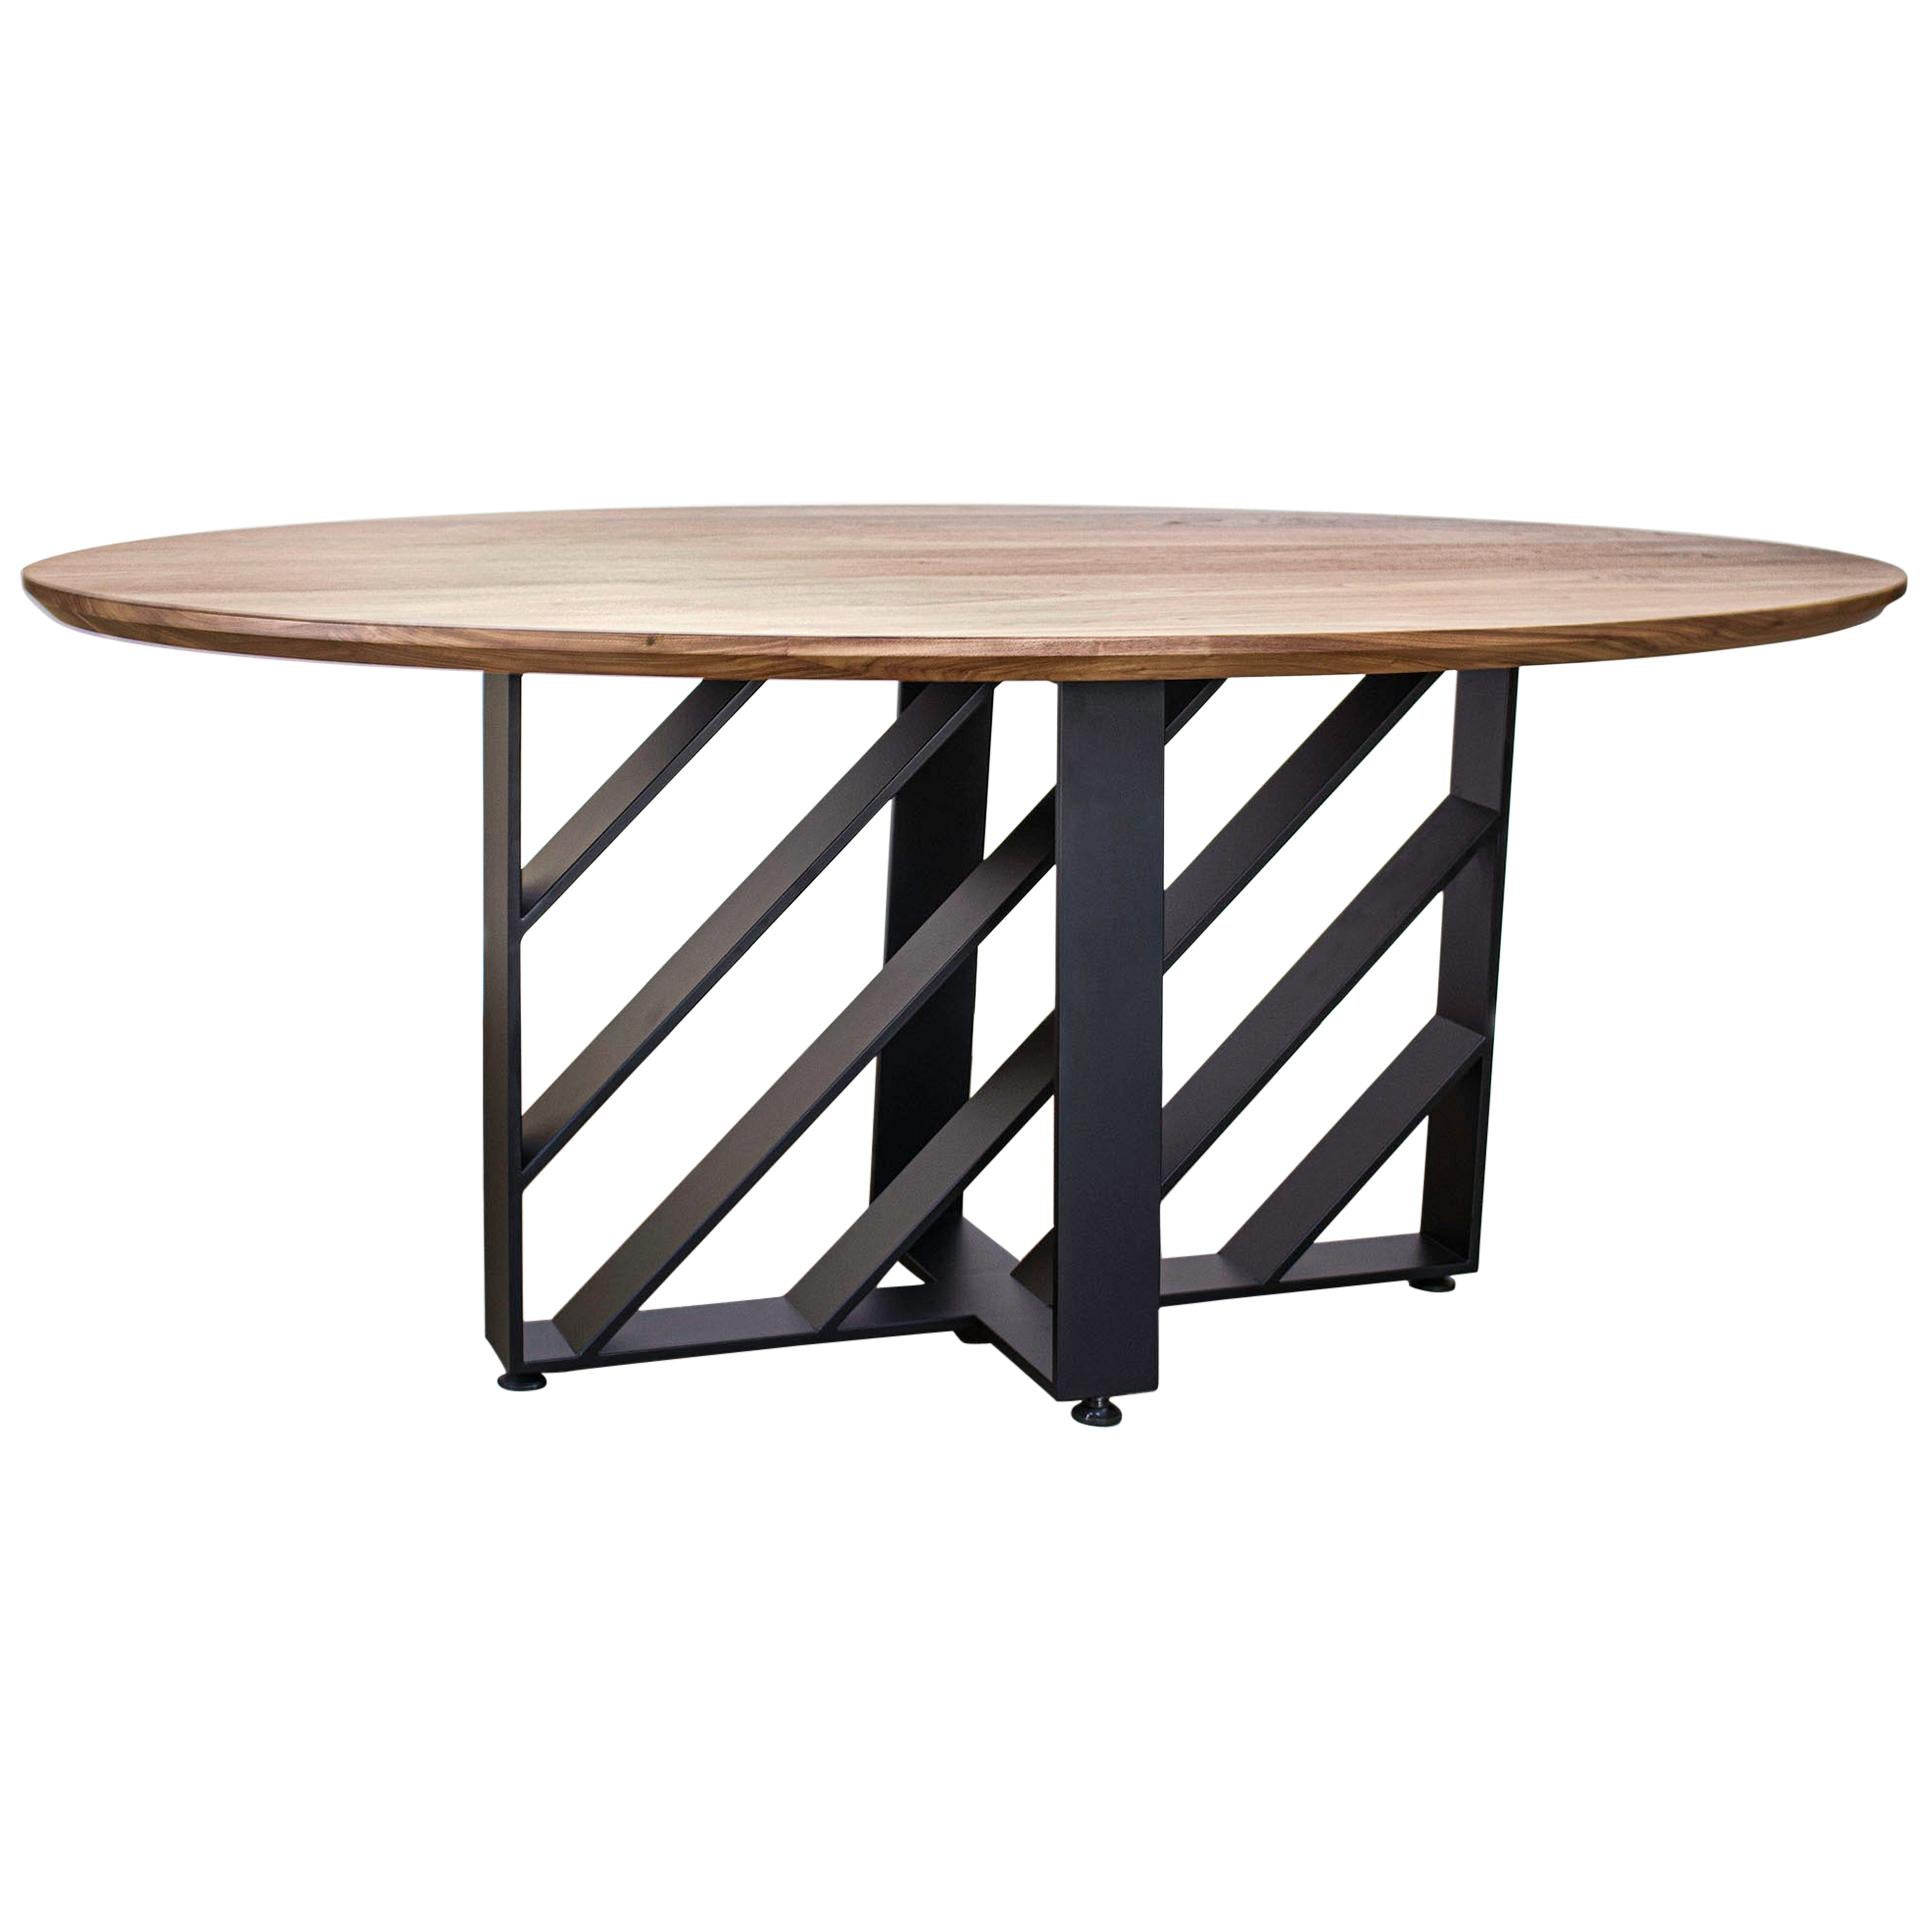 Oval Dining Table, Blackened Steel, Hardwood, Modern, Custom, Semigood